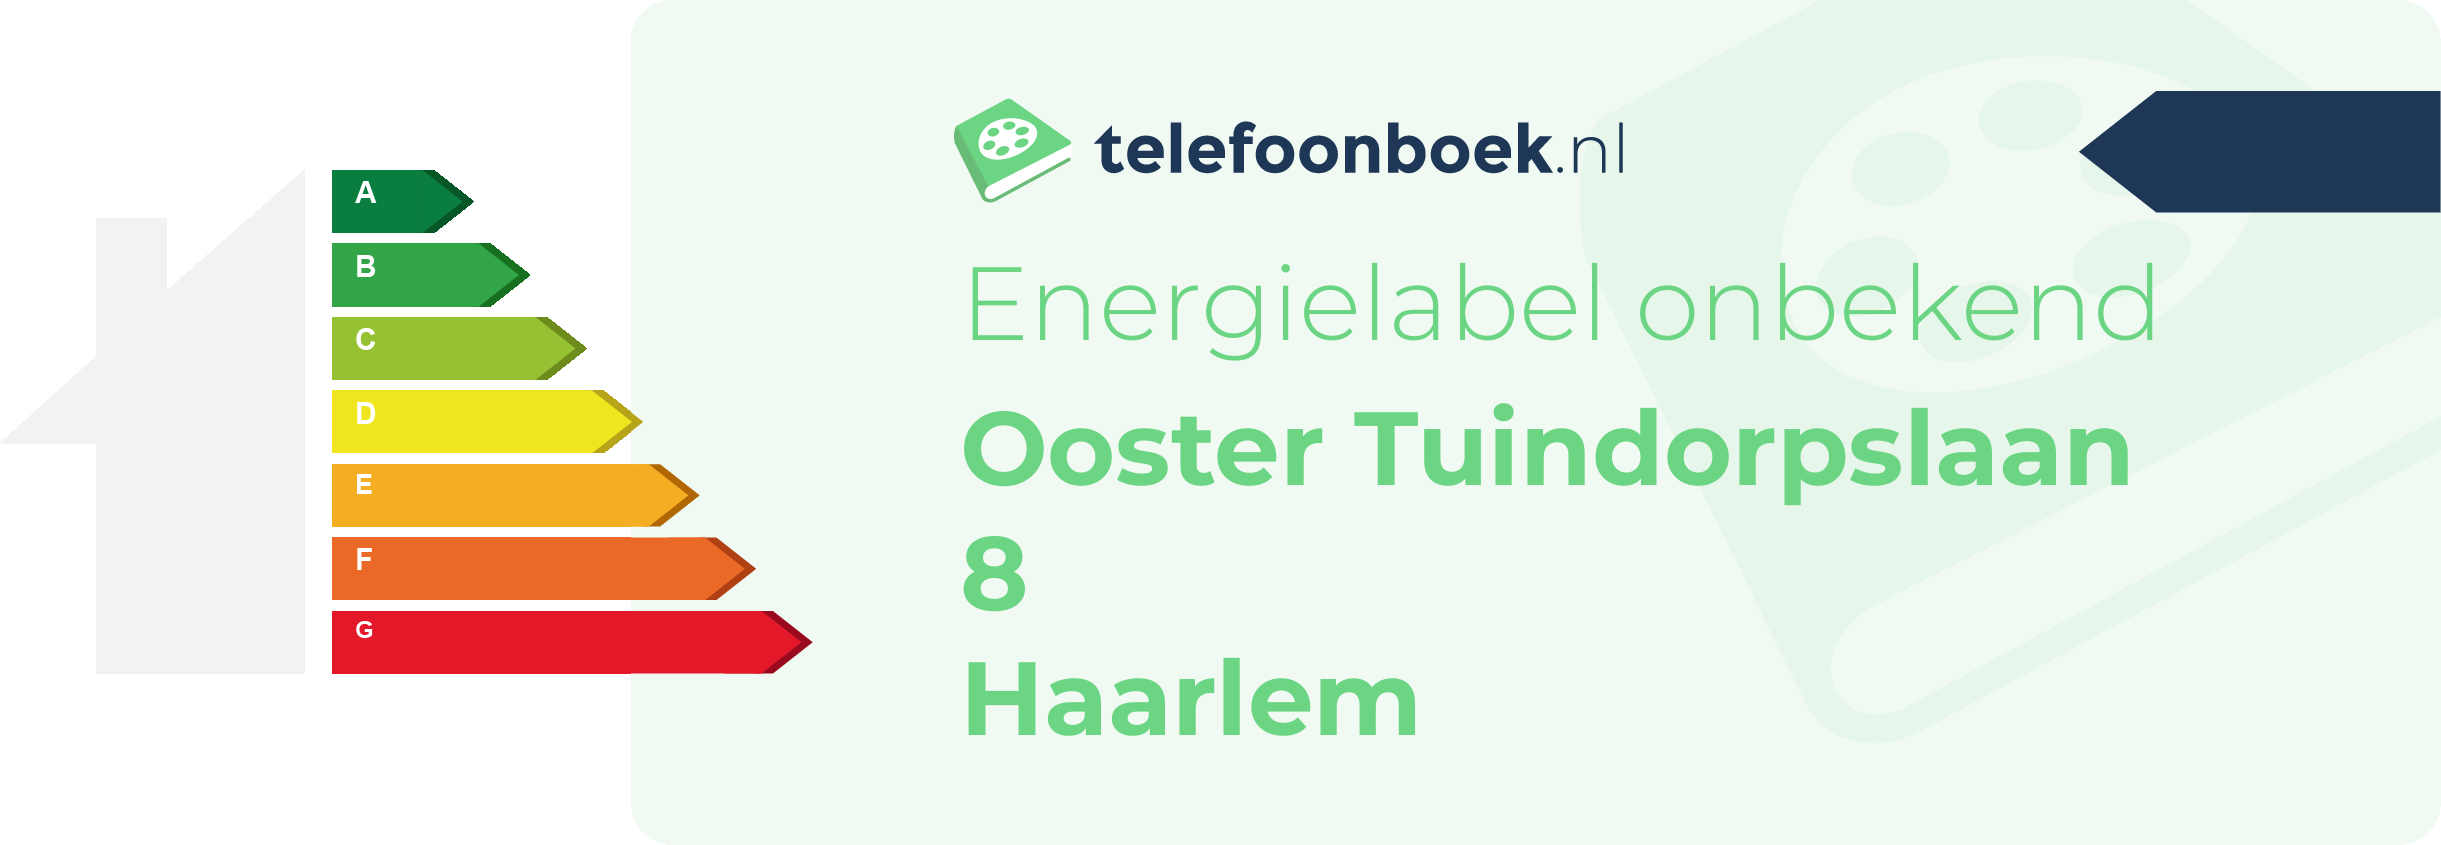 Energielabel Ooster Tuindorpslaan 8 Haarlem